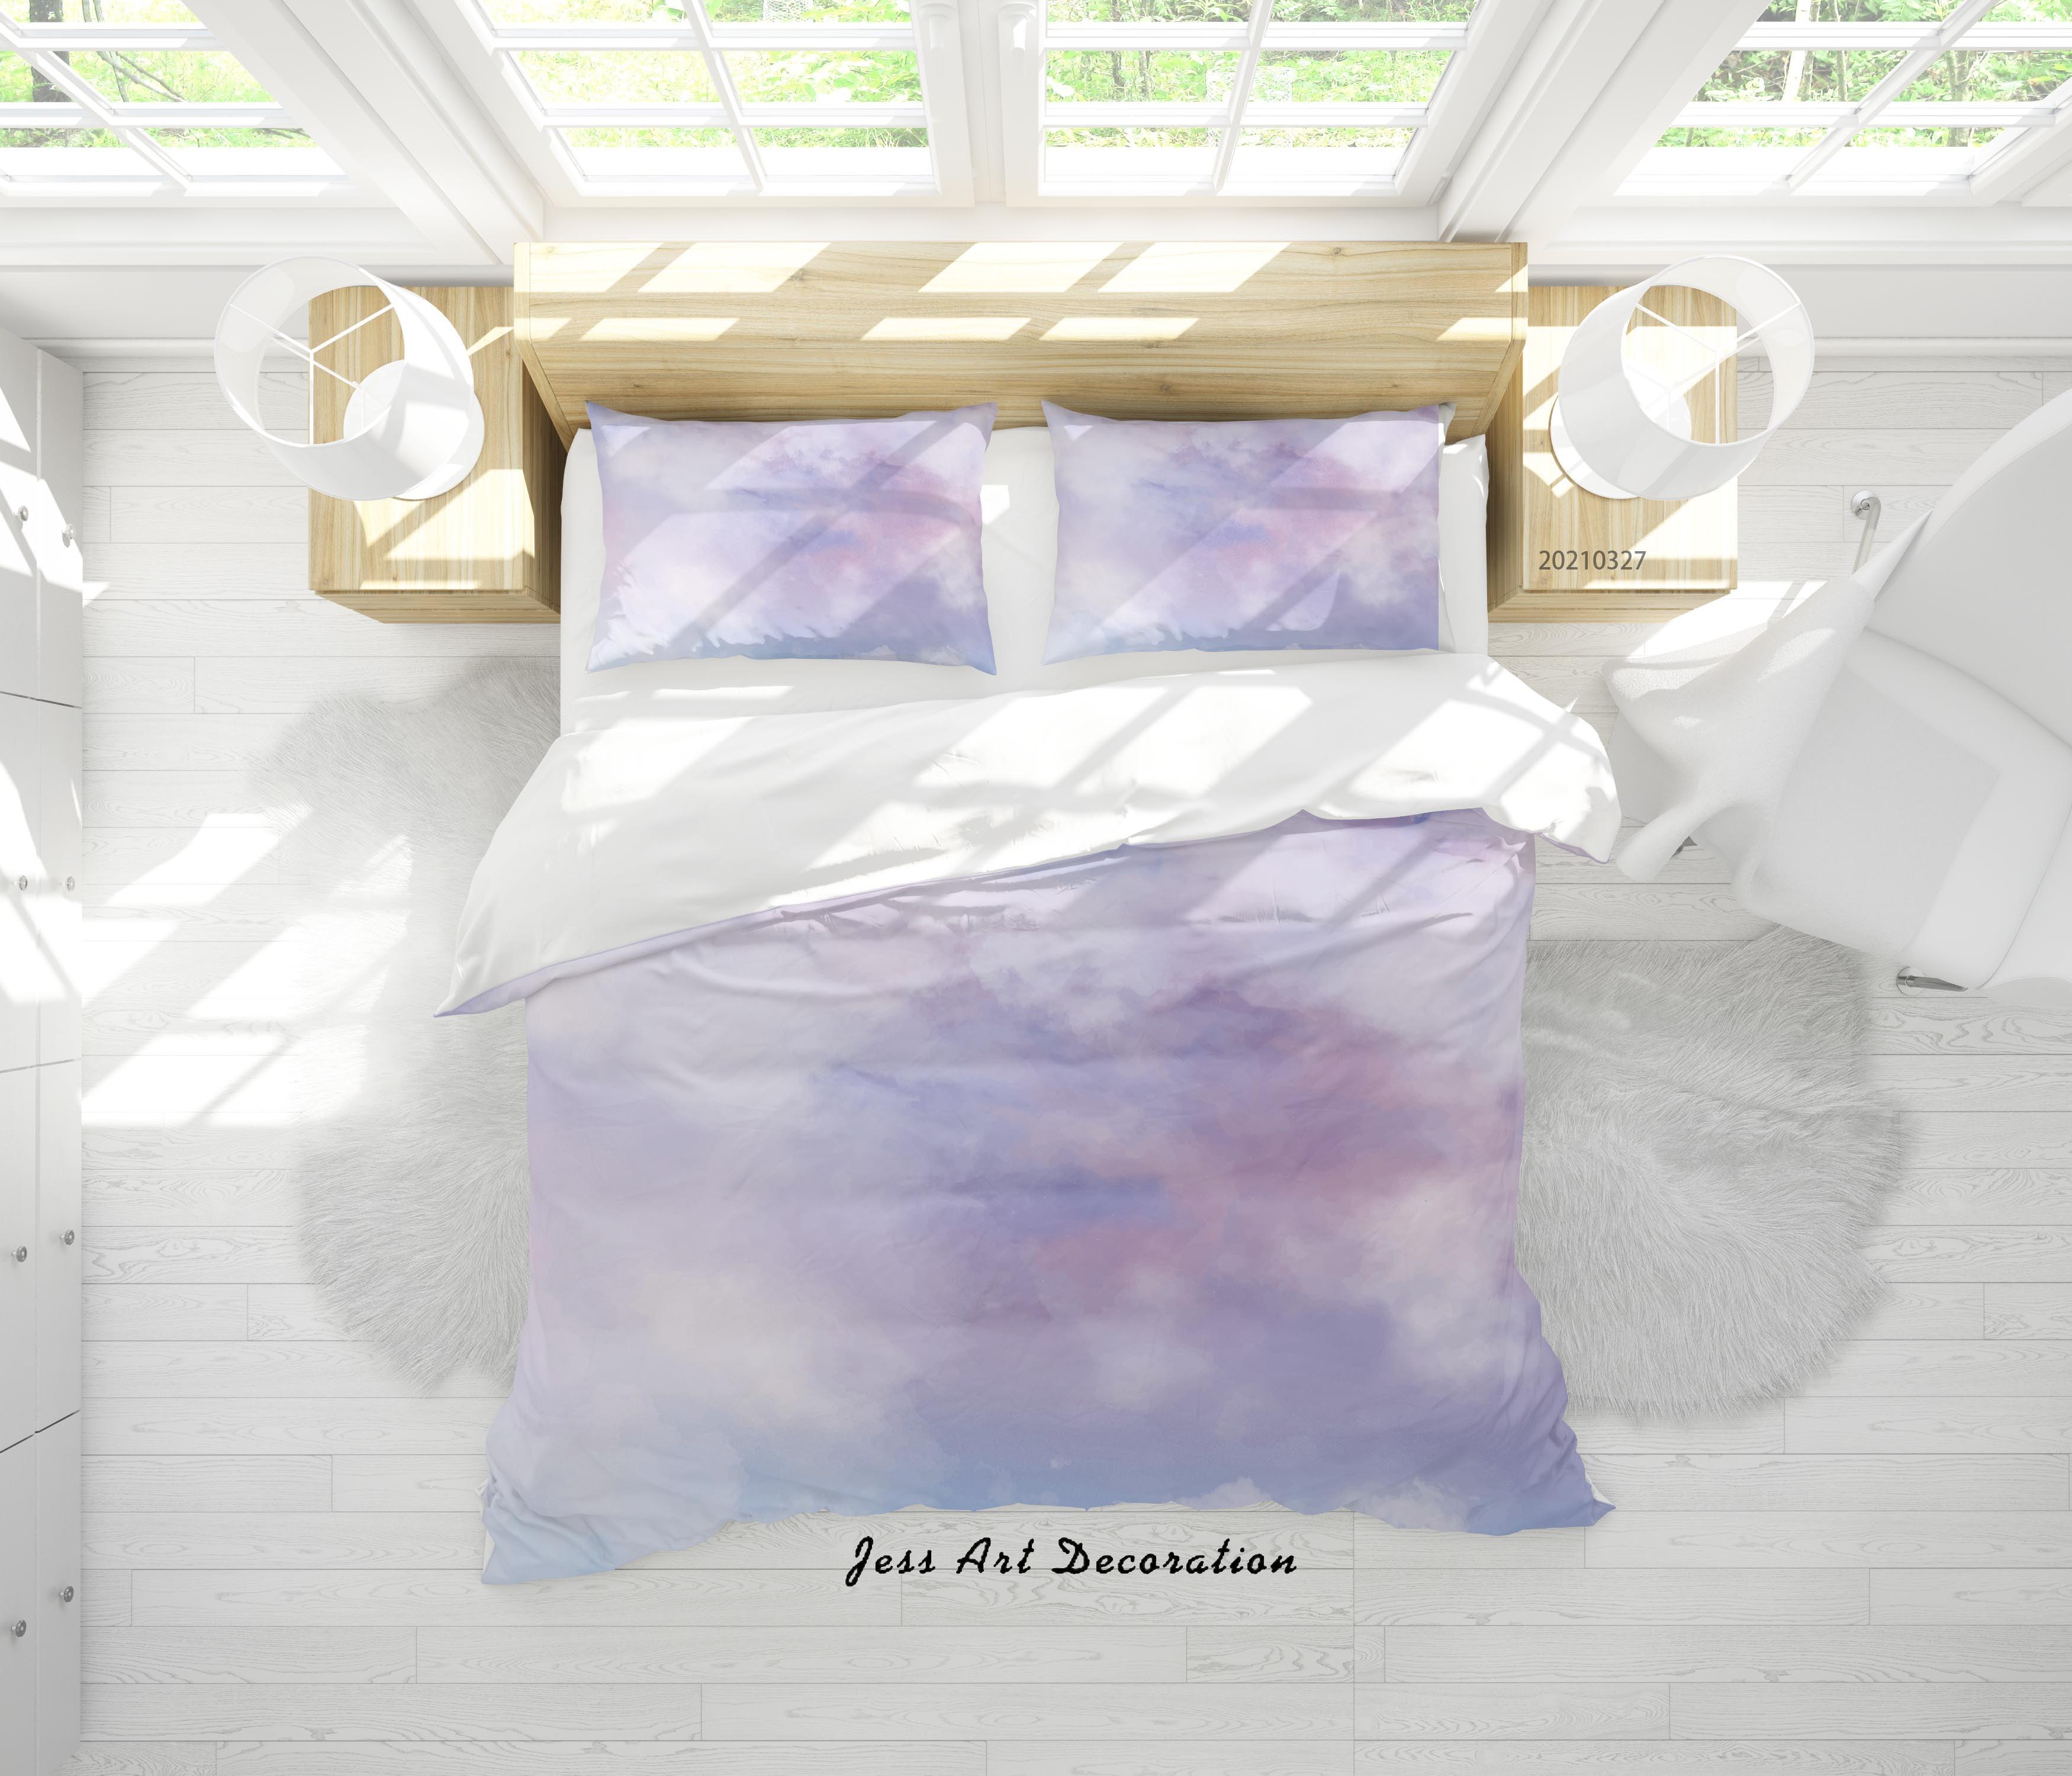 3D Watercolor Sky Cloud Quilt Cover Set Bedding Set Duvet Cover Pillowcases 58- Jess Art Decoration